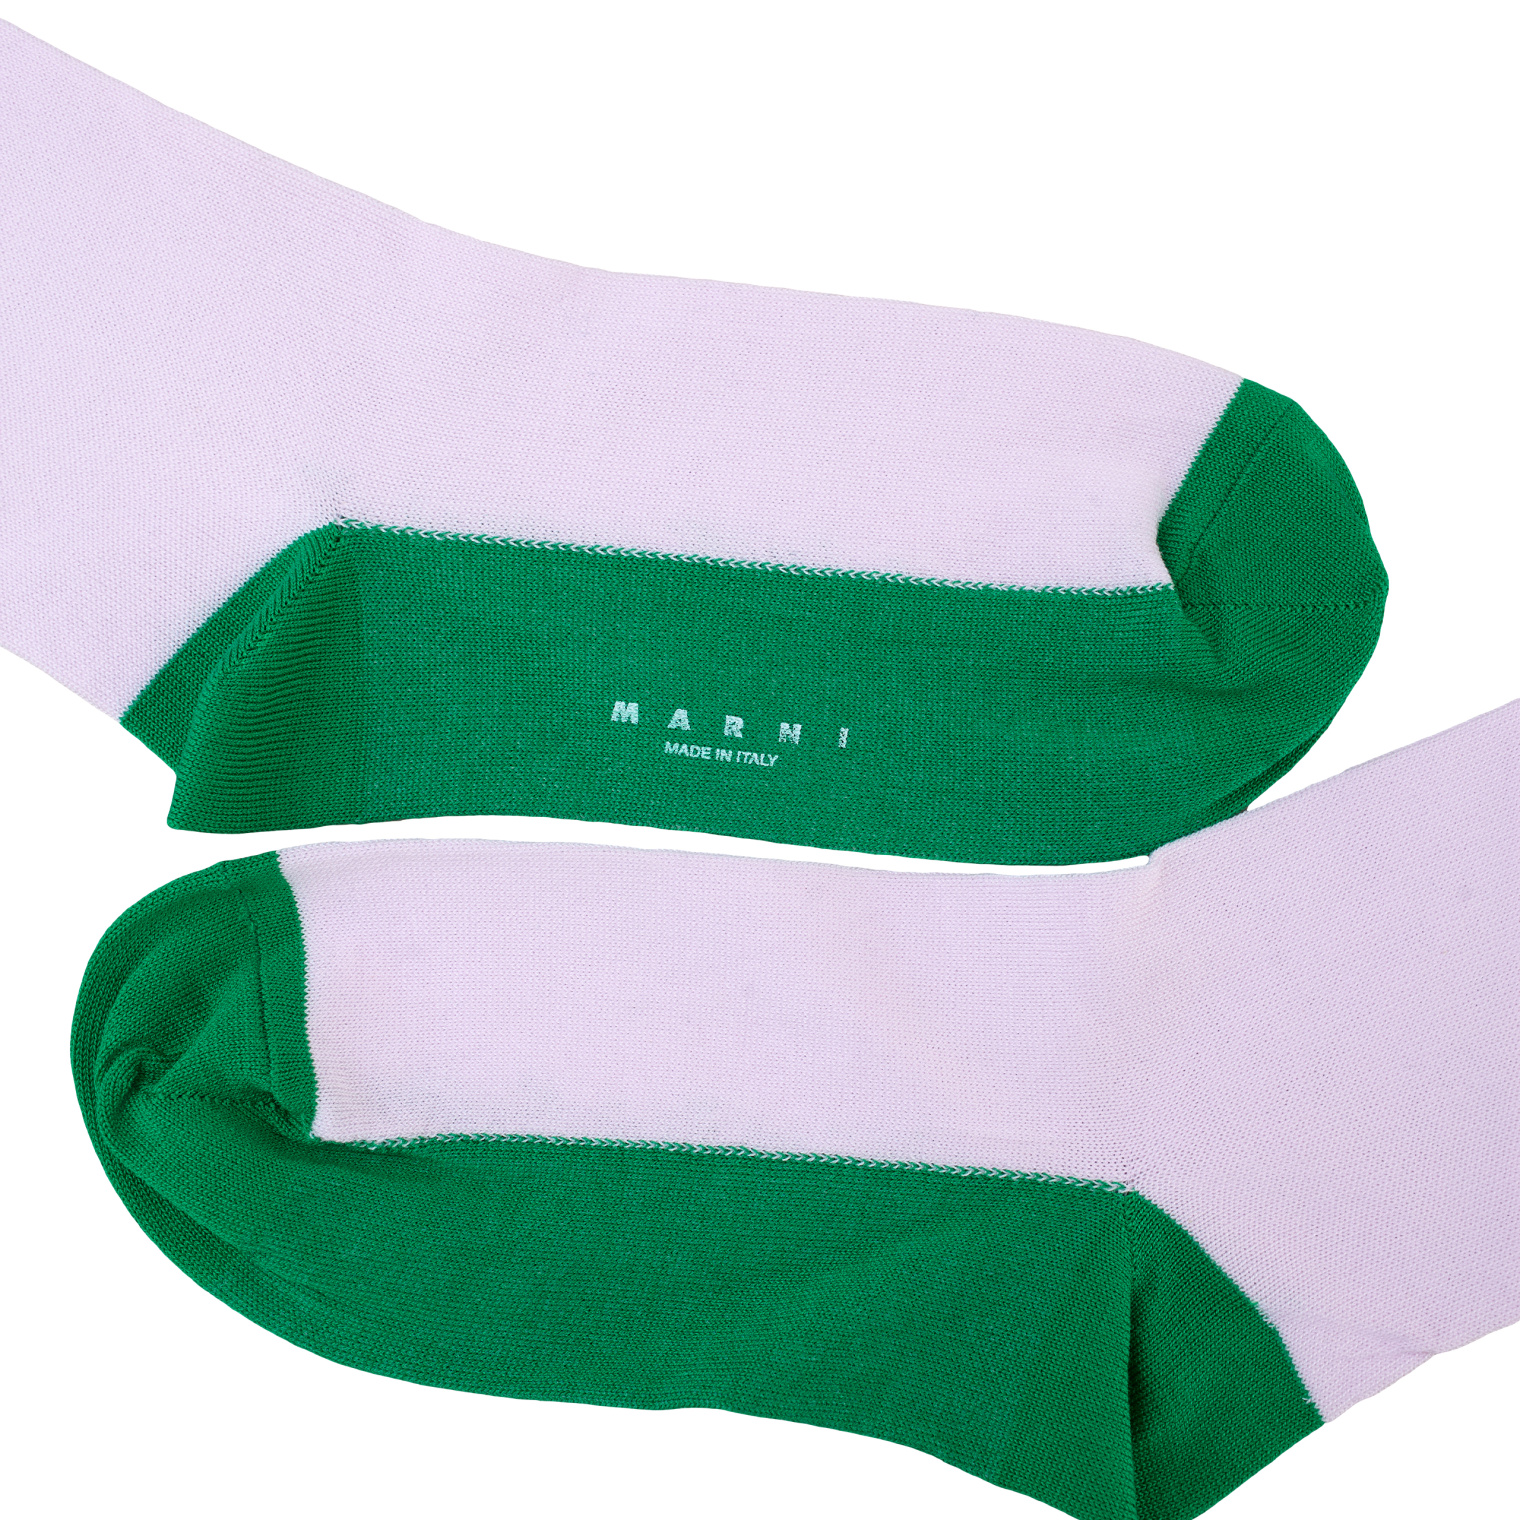 Marni Two-color logo socks